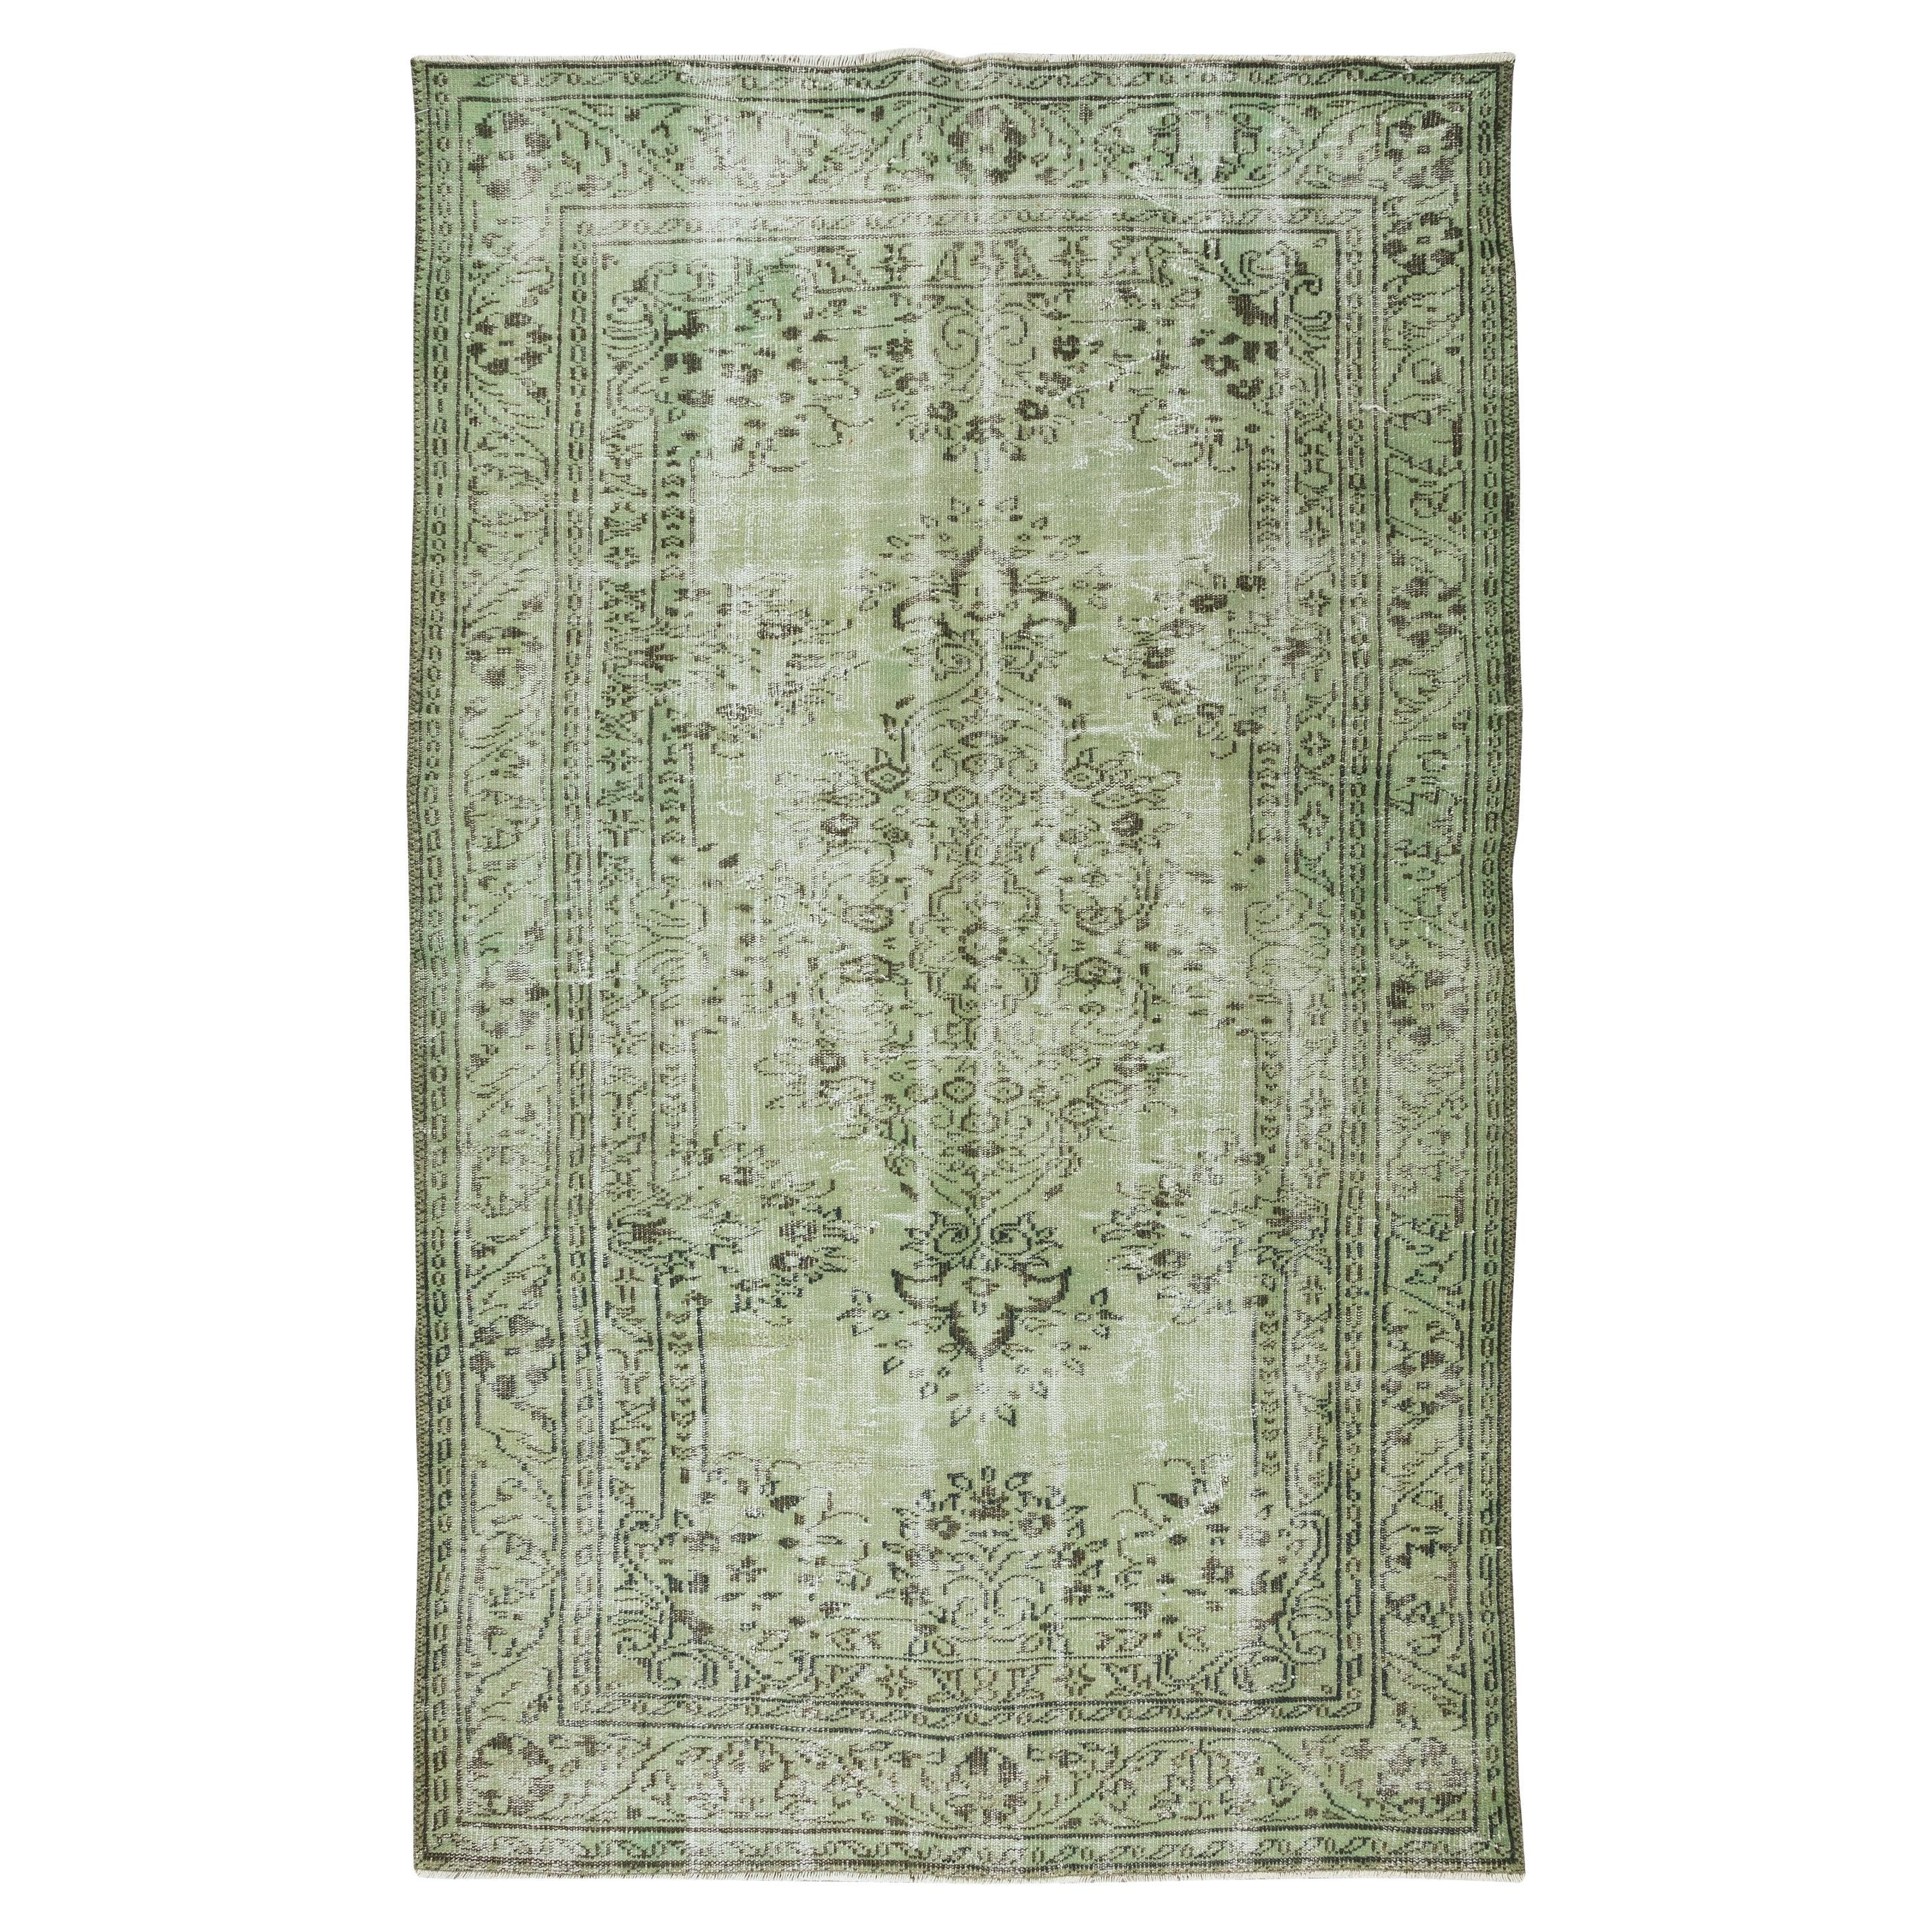 5.8x9.5 Ft Living Room Decor Rug, Light Green Turkish Handmade Carpet (tapis turc fait à la main)